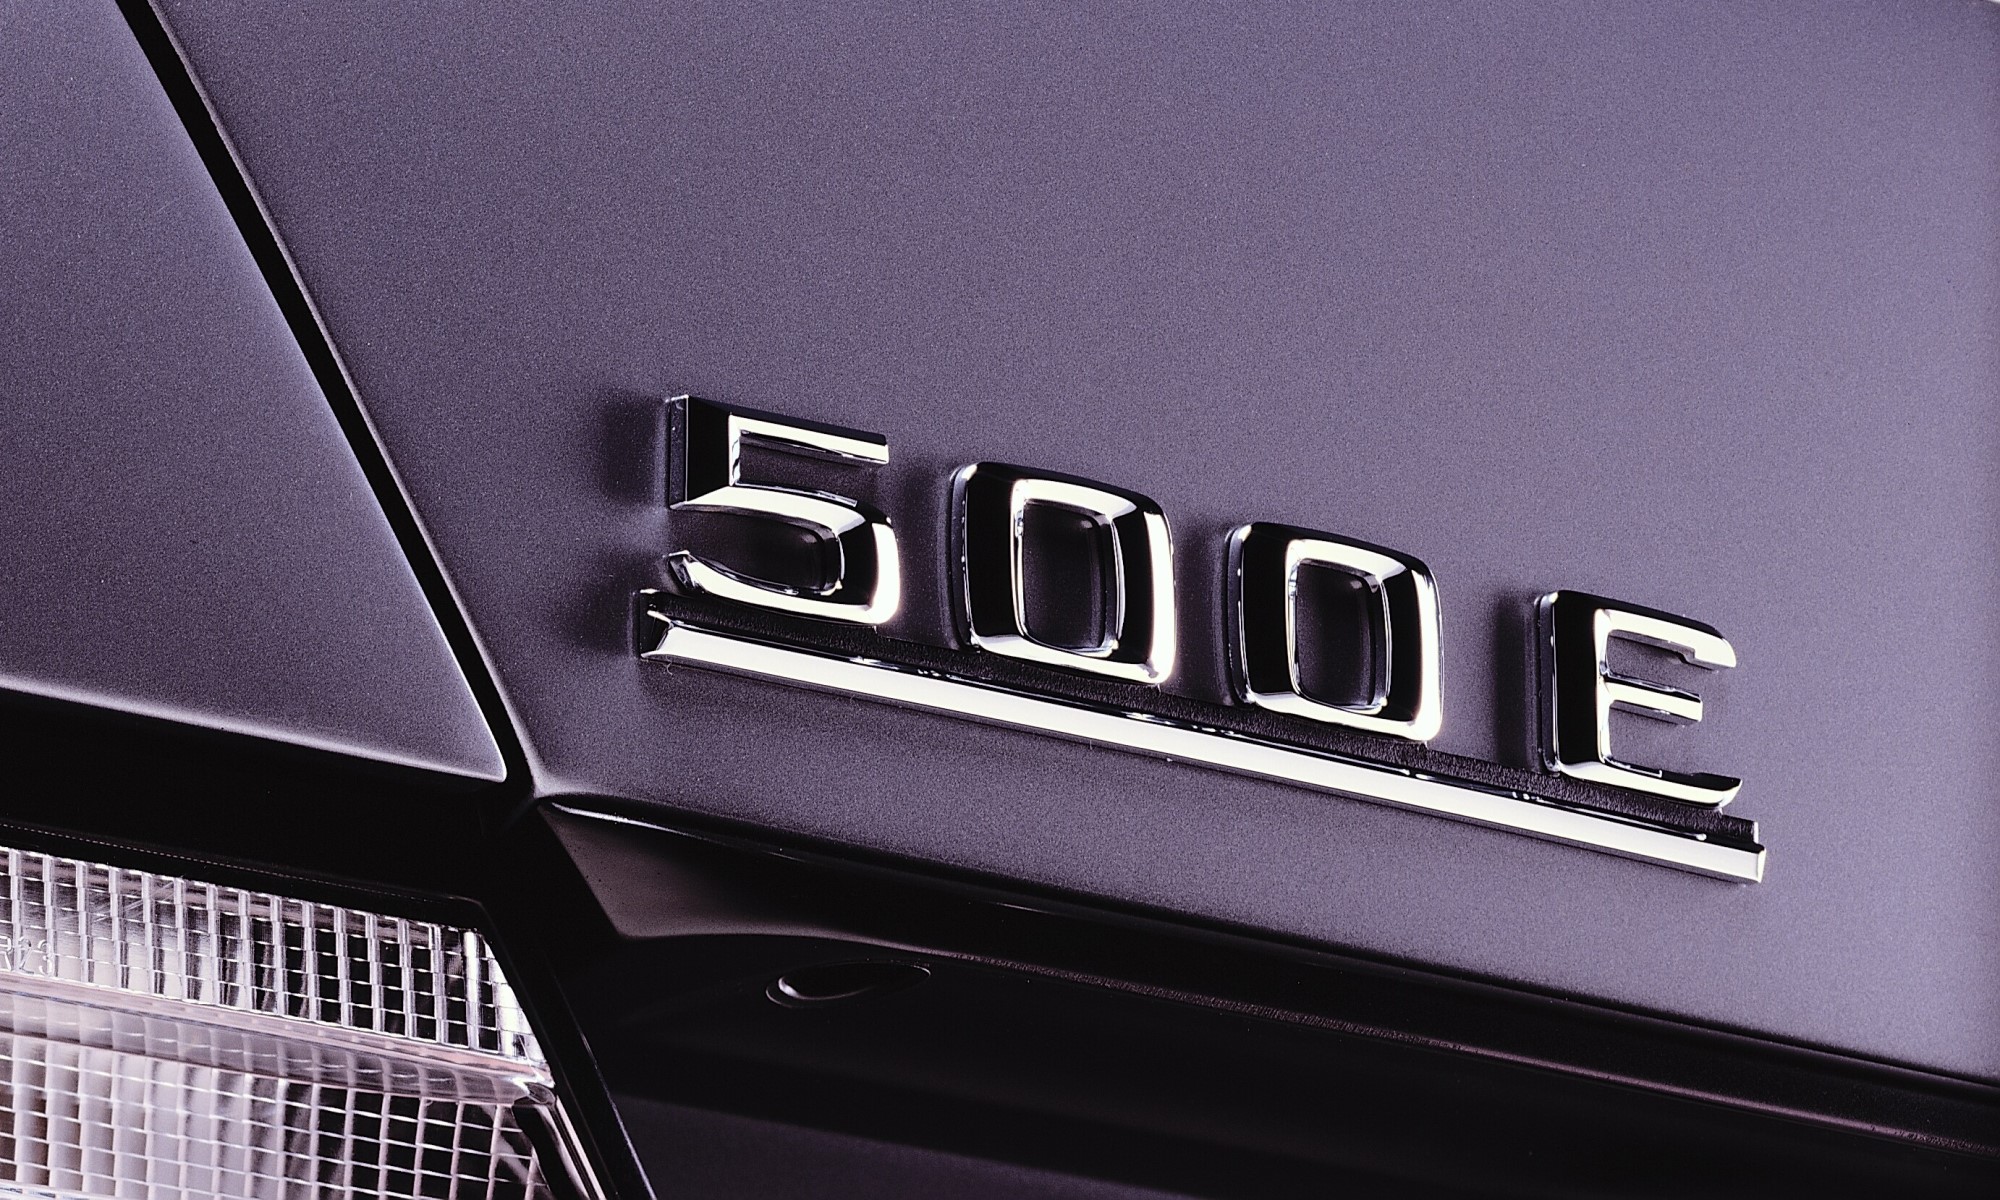 Mercedes-Benz 500E rear badge